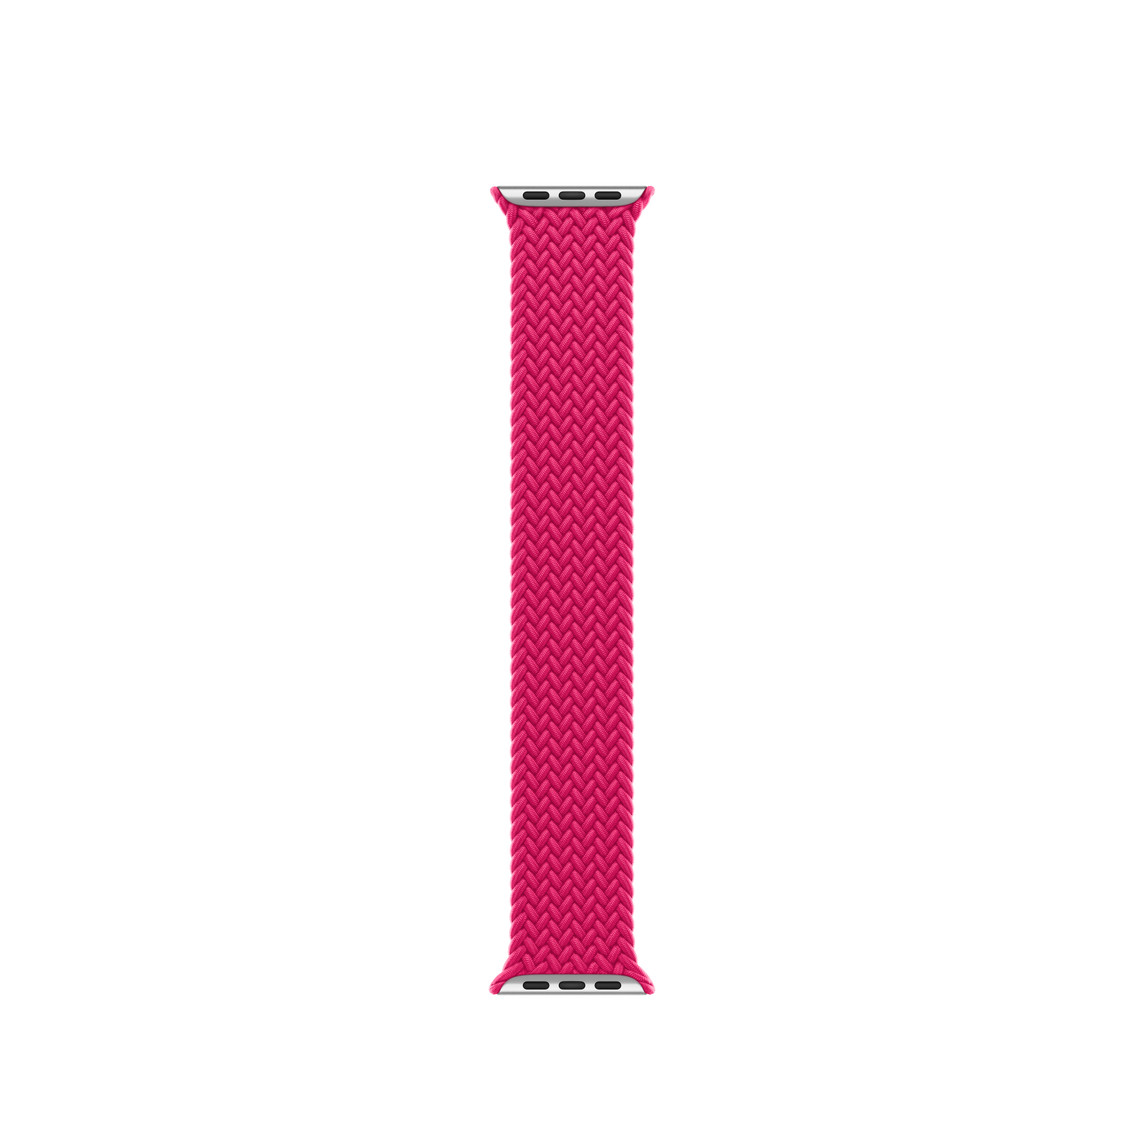 Bracelet solo tressé framboise rouge, fil de polyester et de silicone tressé, sans fermoir ni boucle